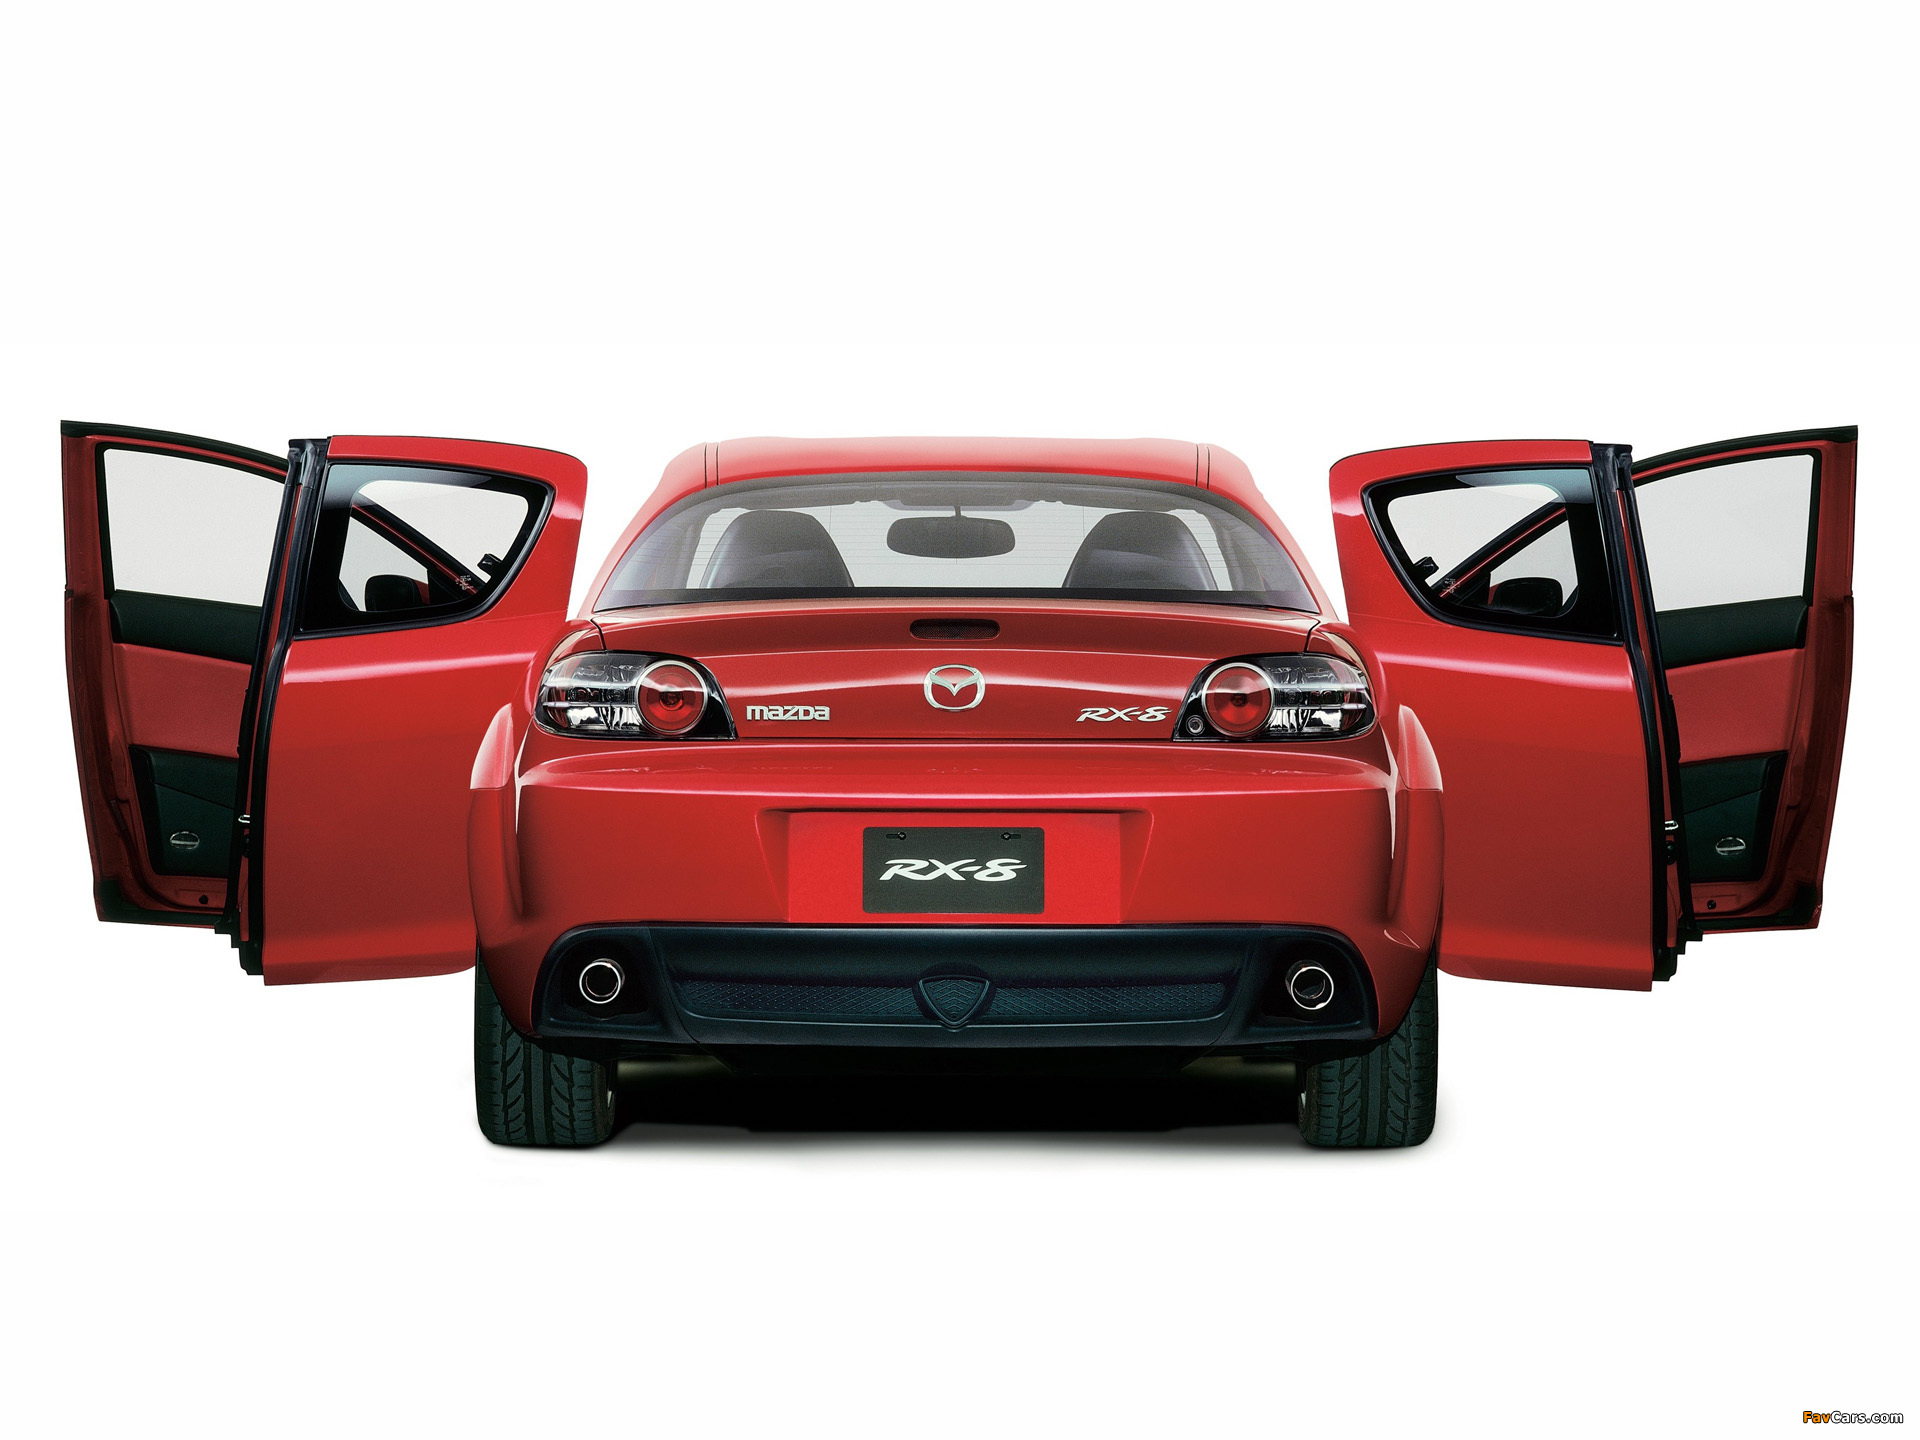 Mazda RX-8 электромобиль скачать